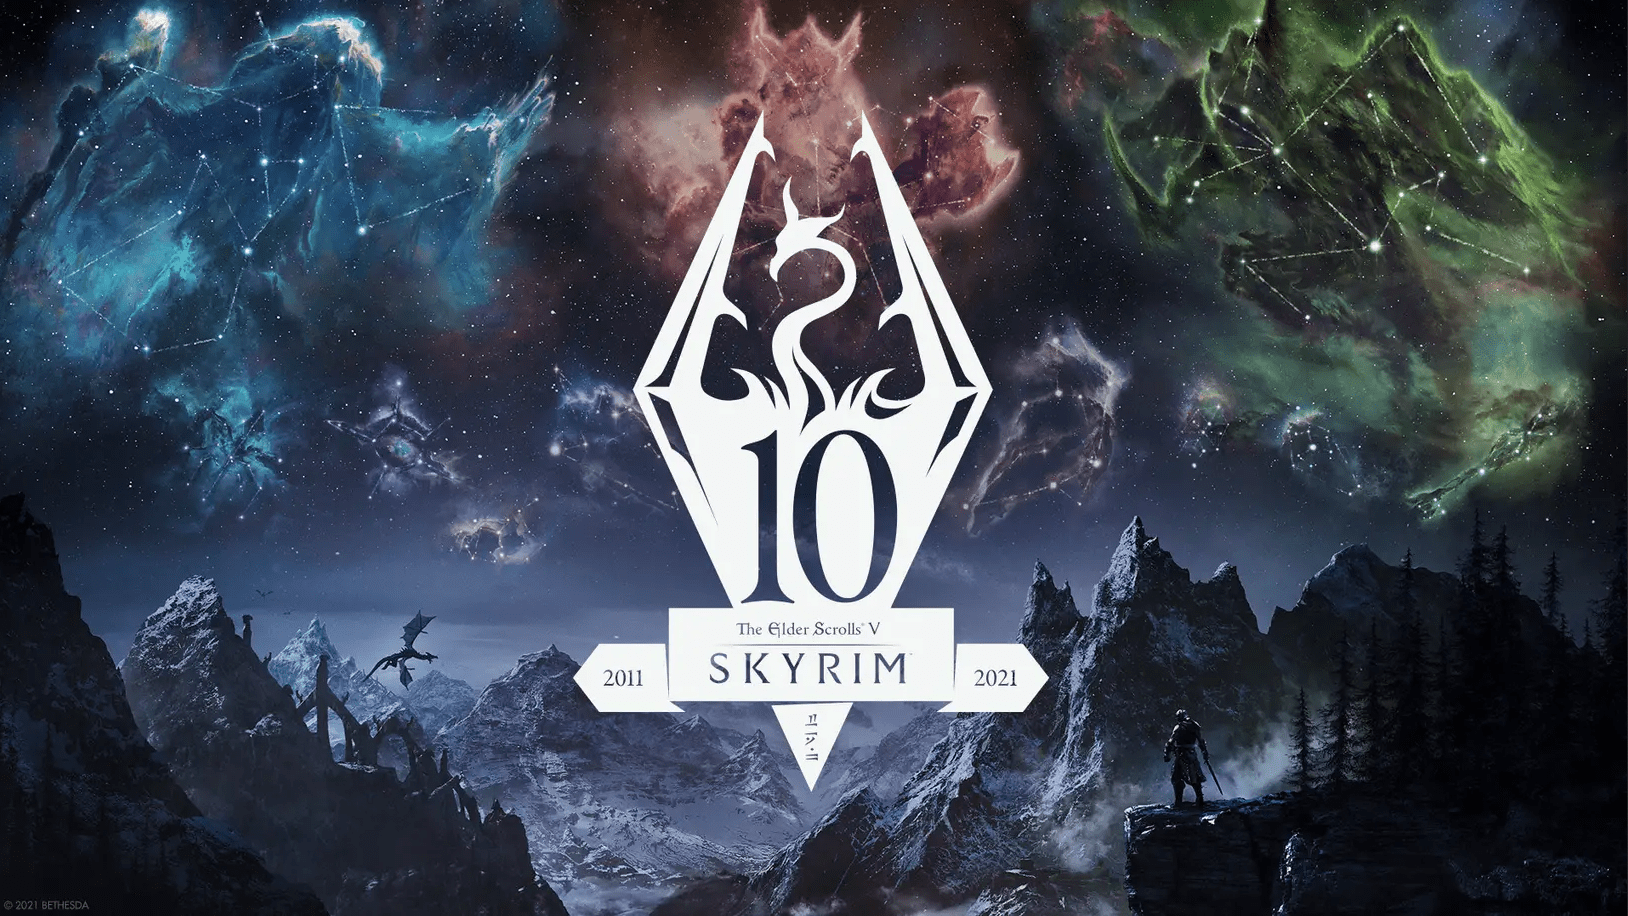 Bethesda célèbre les dix ans de The Elder Scrolls V: Skyrim avec une nouvelle Édition Anniversaire, sortie le 11 novembre